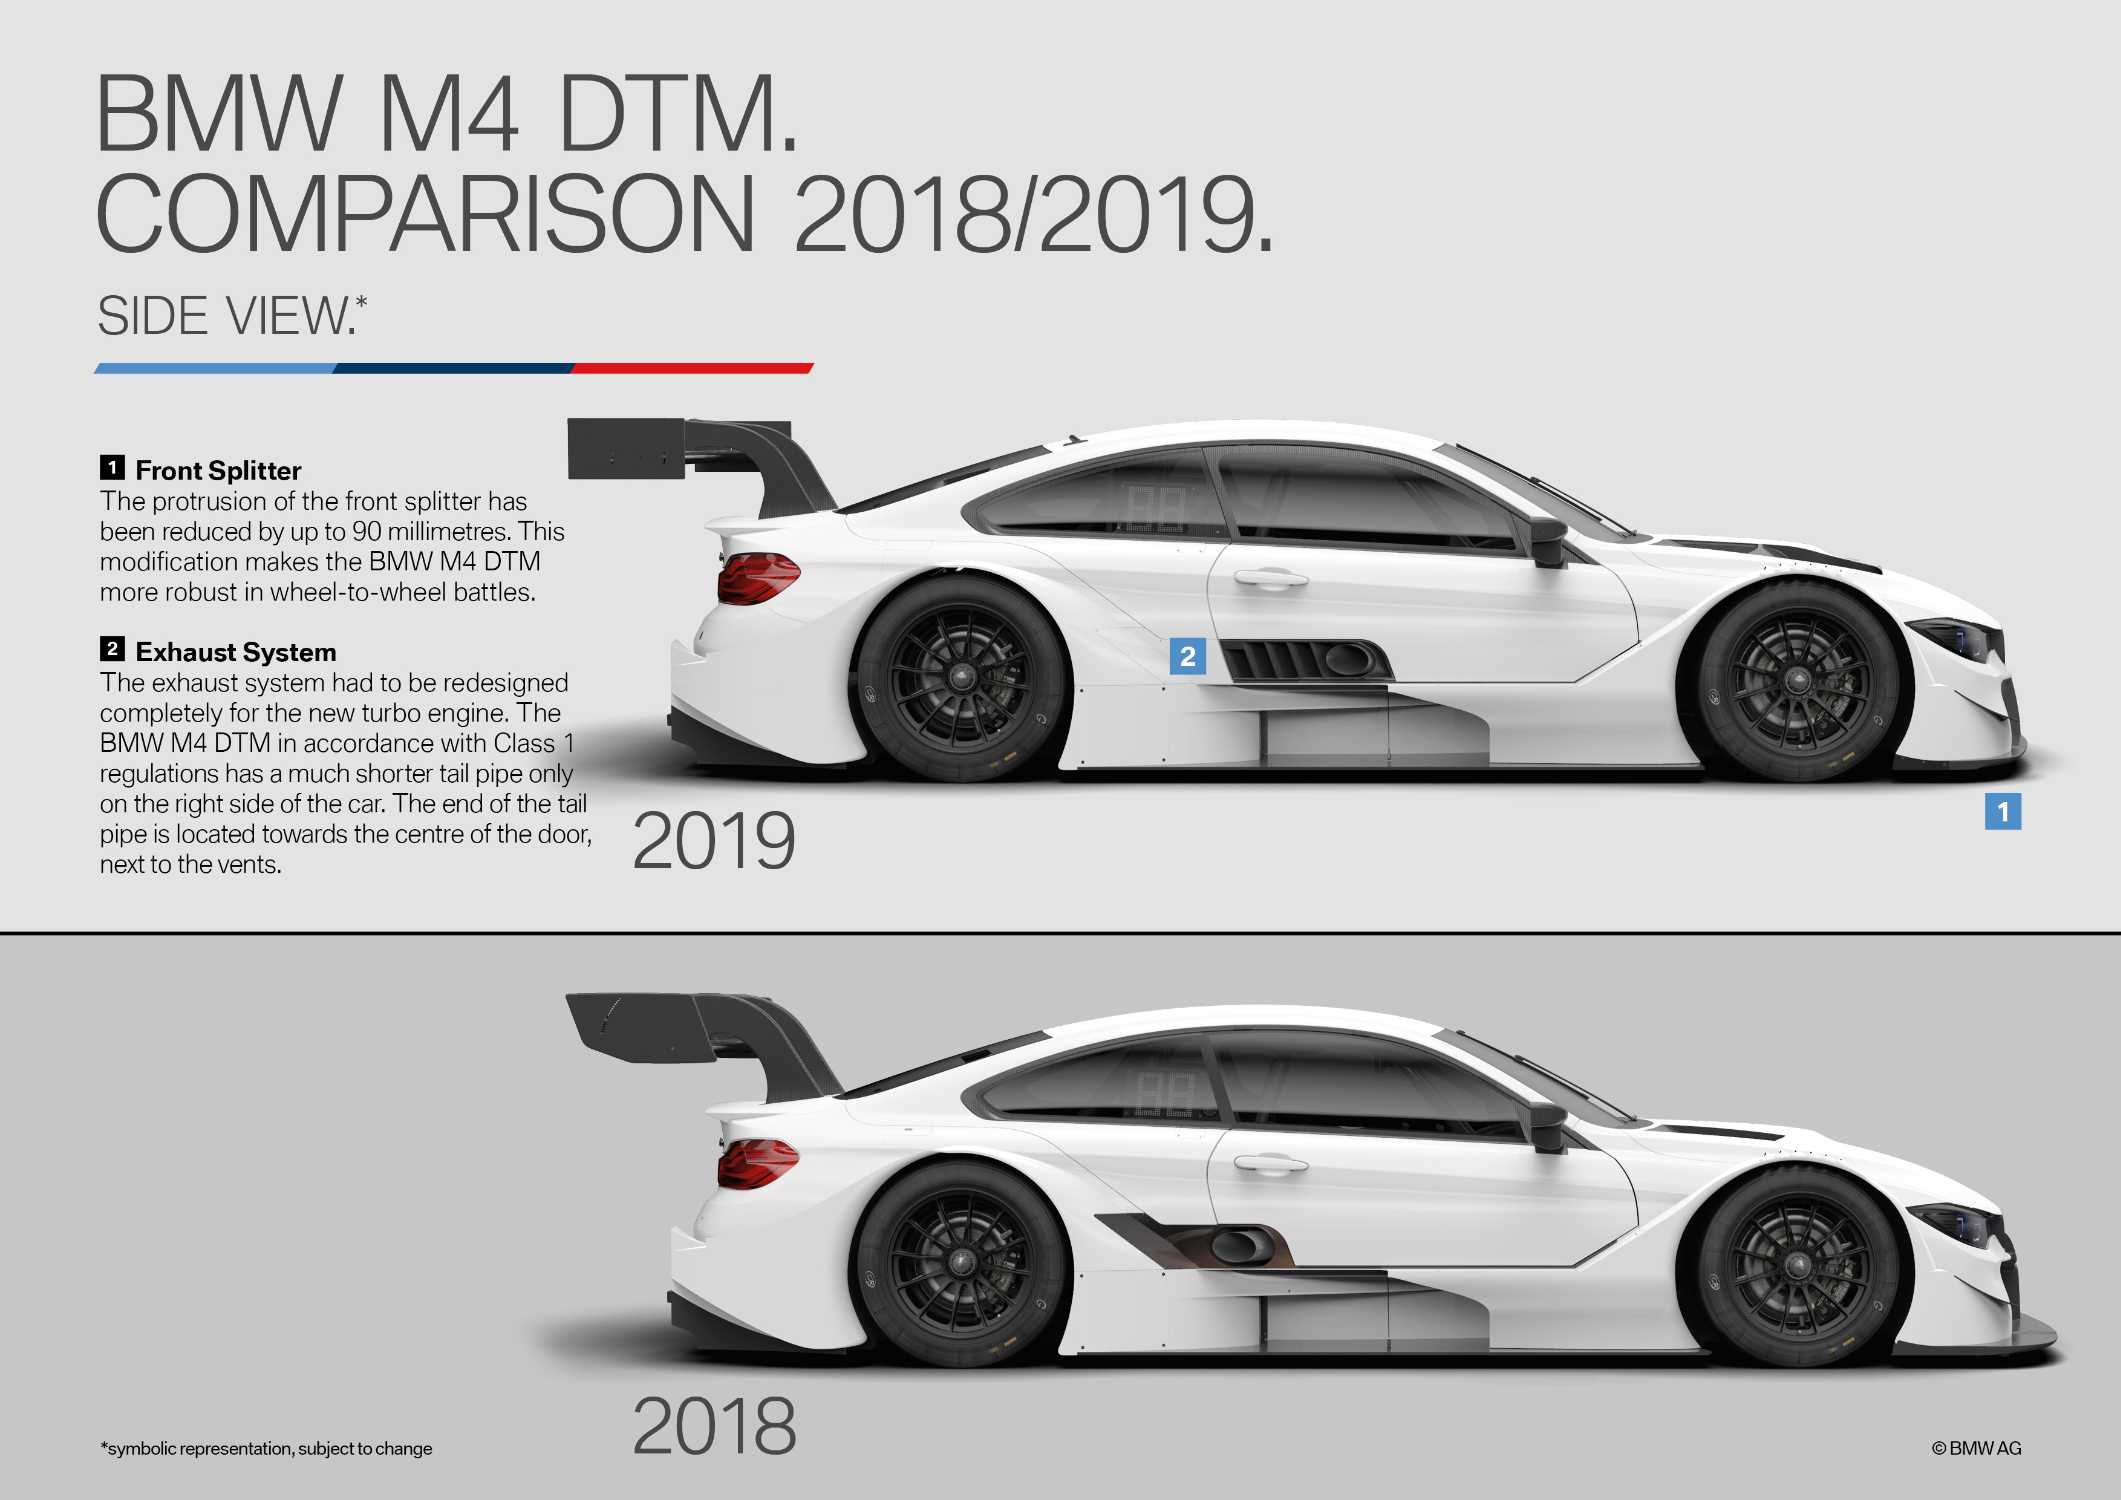 BMW M4 DTM, Comparison 2018/2019.